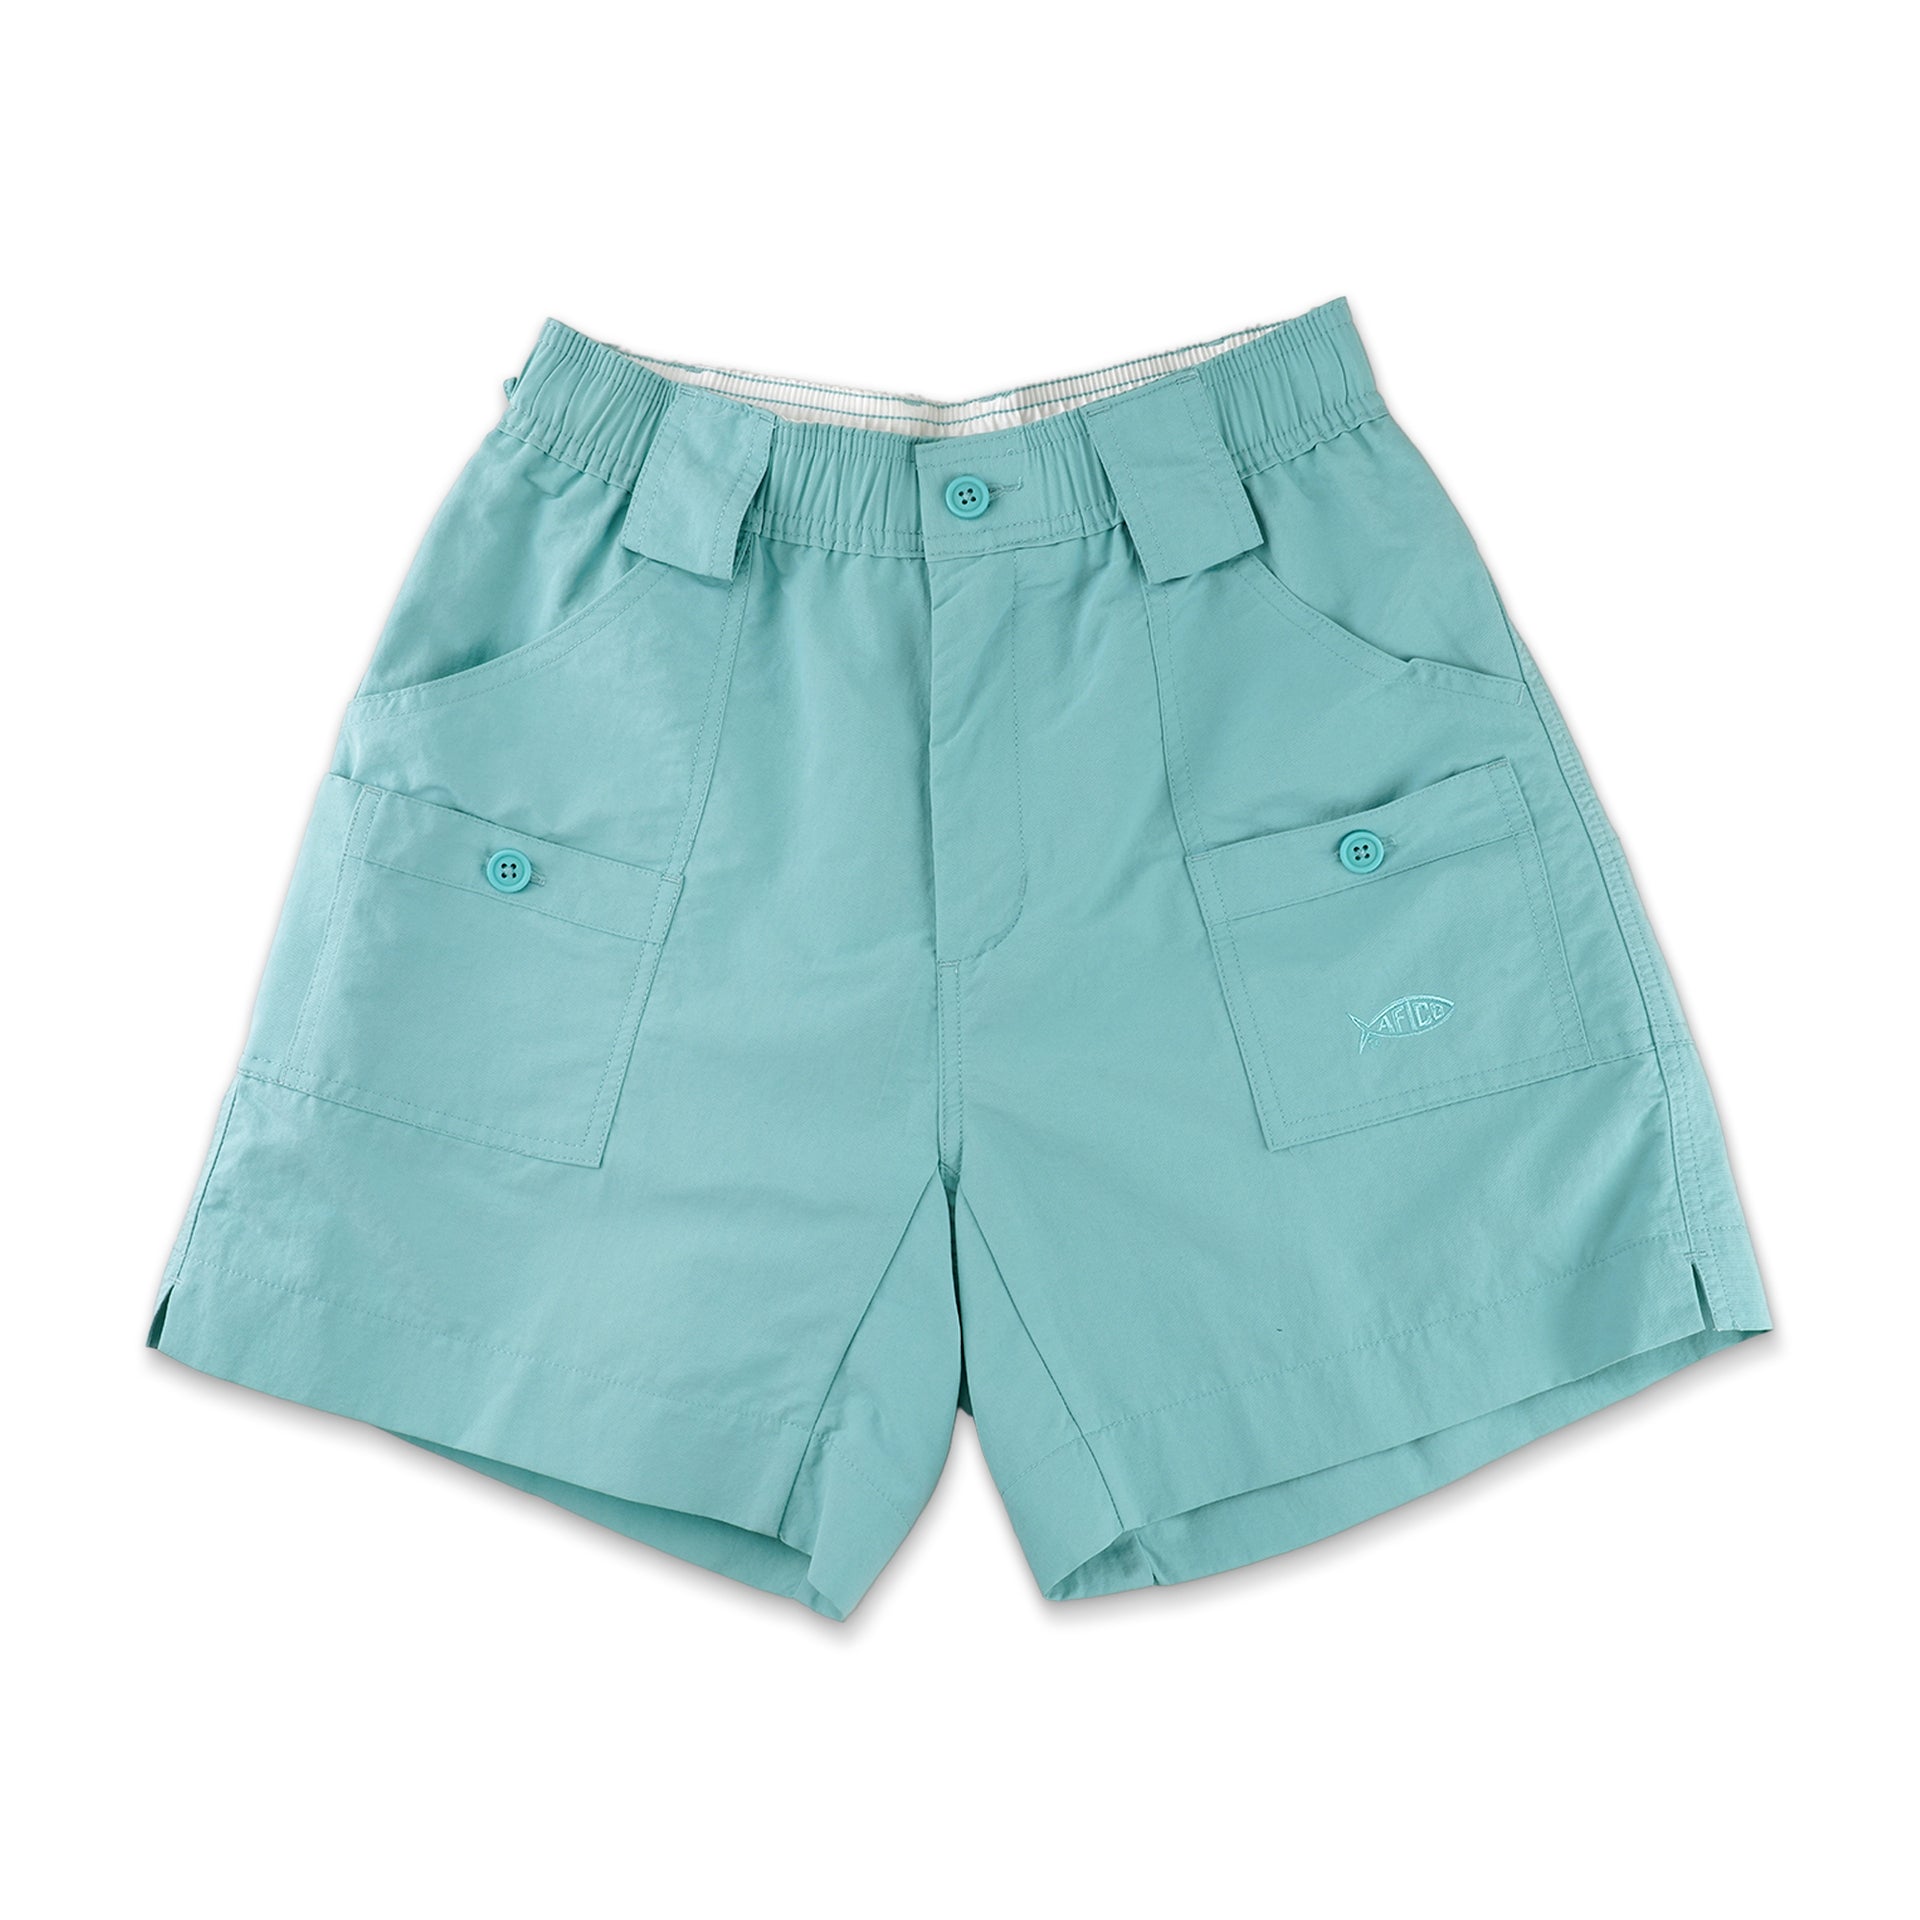 AFTCO Boys Original Fishing Shorts Pastel Turquoise / 22